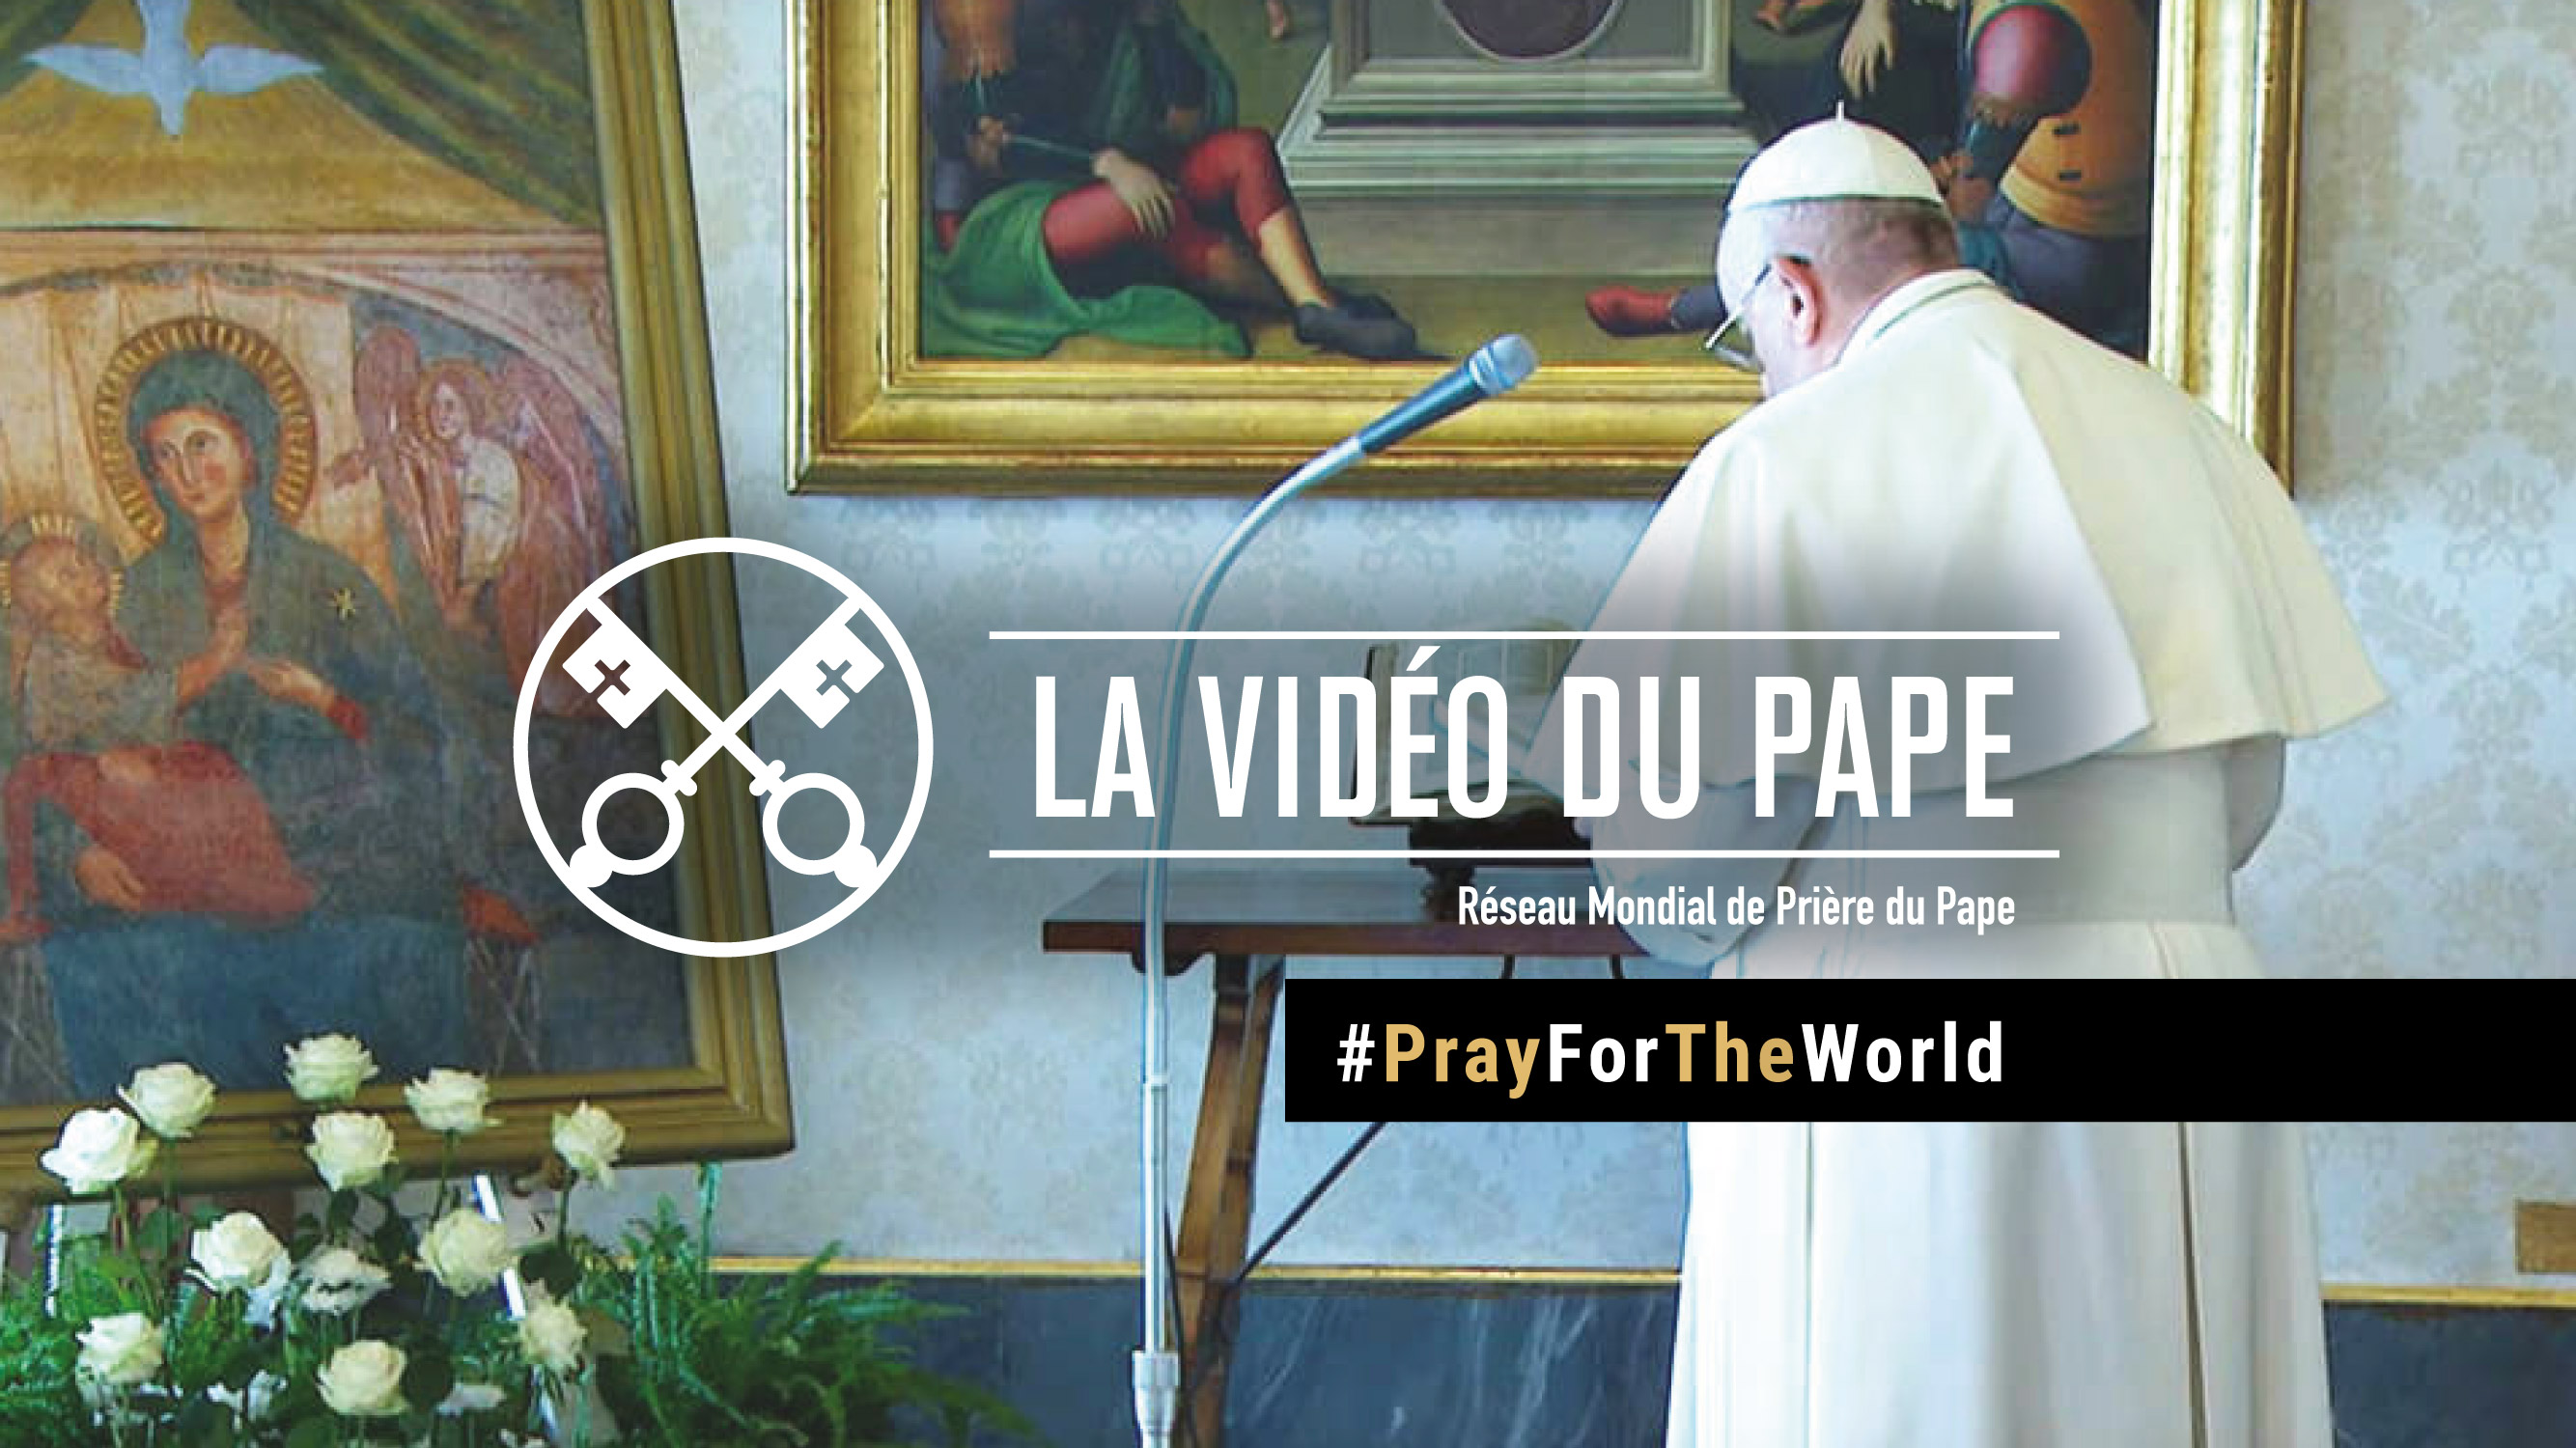 La vidéo spéciale du Pape François pour prier  pour la fin de la pandémie  #PrayForTheWorld